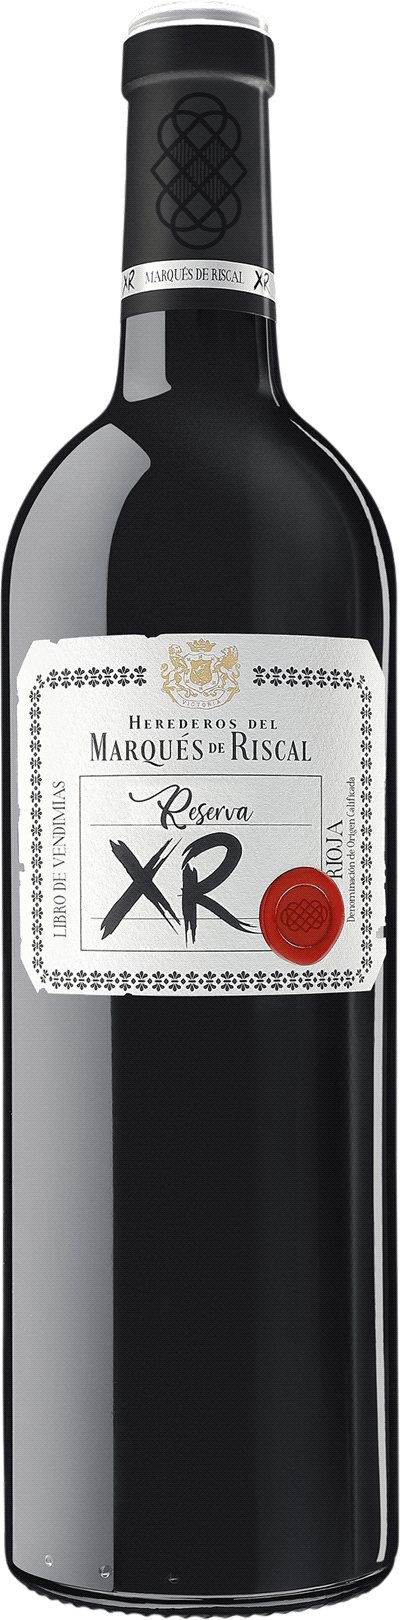 Marques de Riscal Reserva XR, 2017